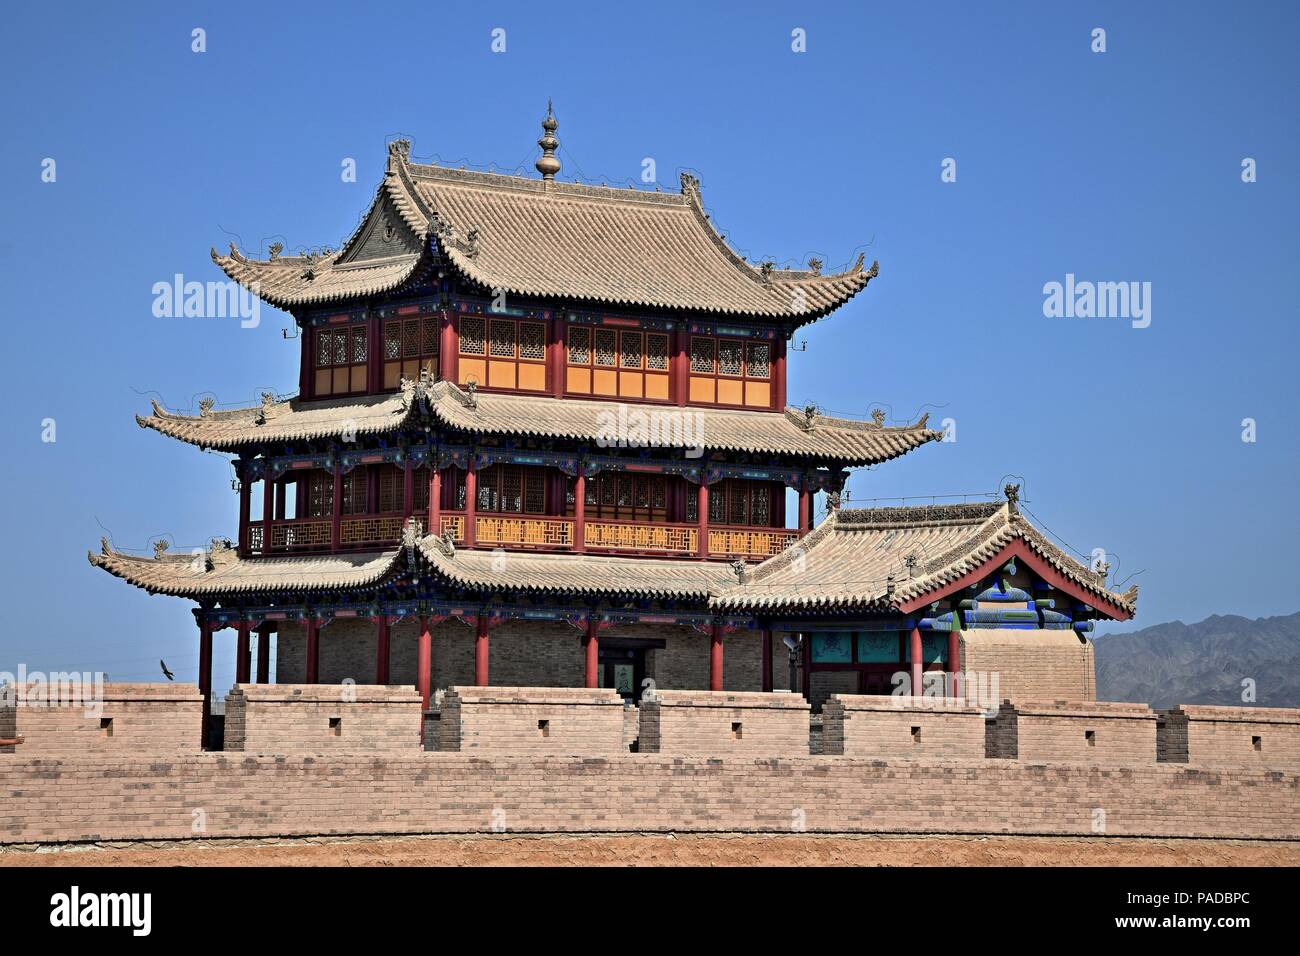 La torre di avvistamento sul Passo Jiayu, il primo passaggio della estremità occidentale della Grande Muraglia Cinese, vicino alla città di Jiayuguan nella provincia di Gansu in Cina. Foto Stock